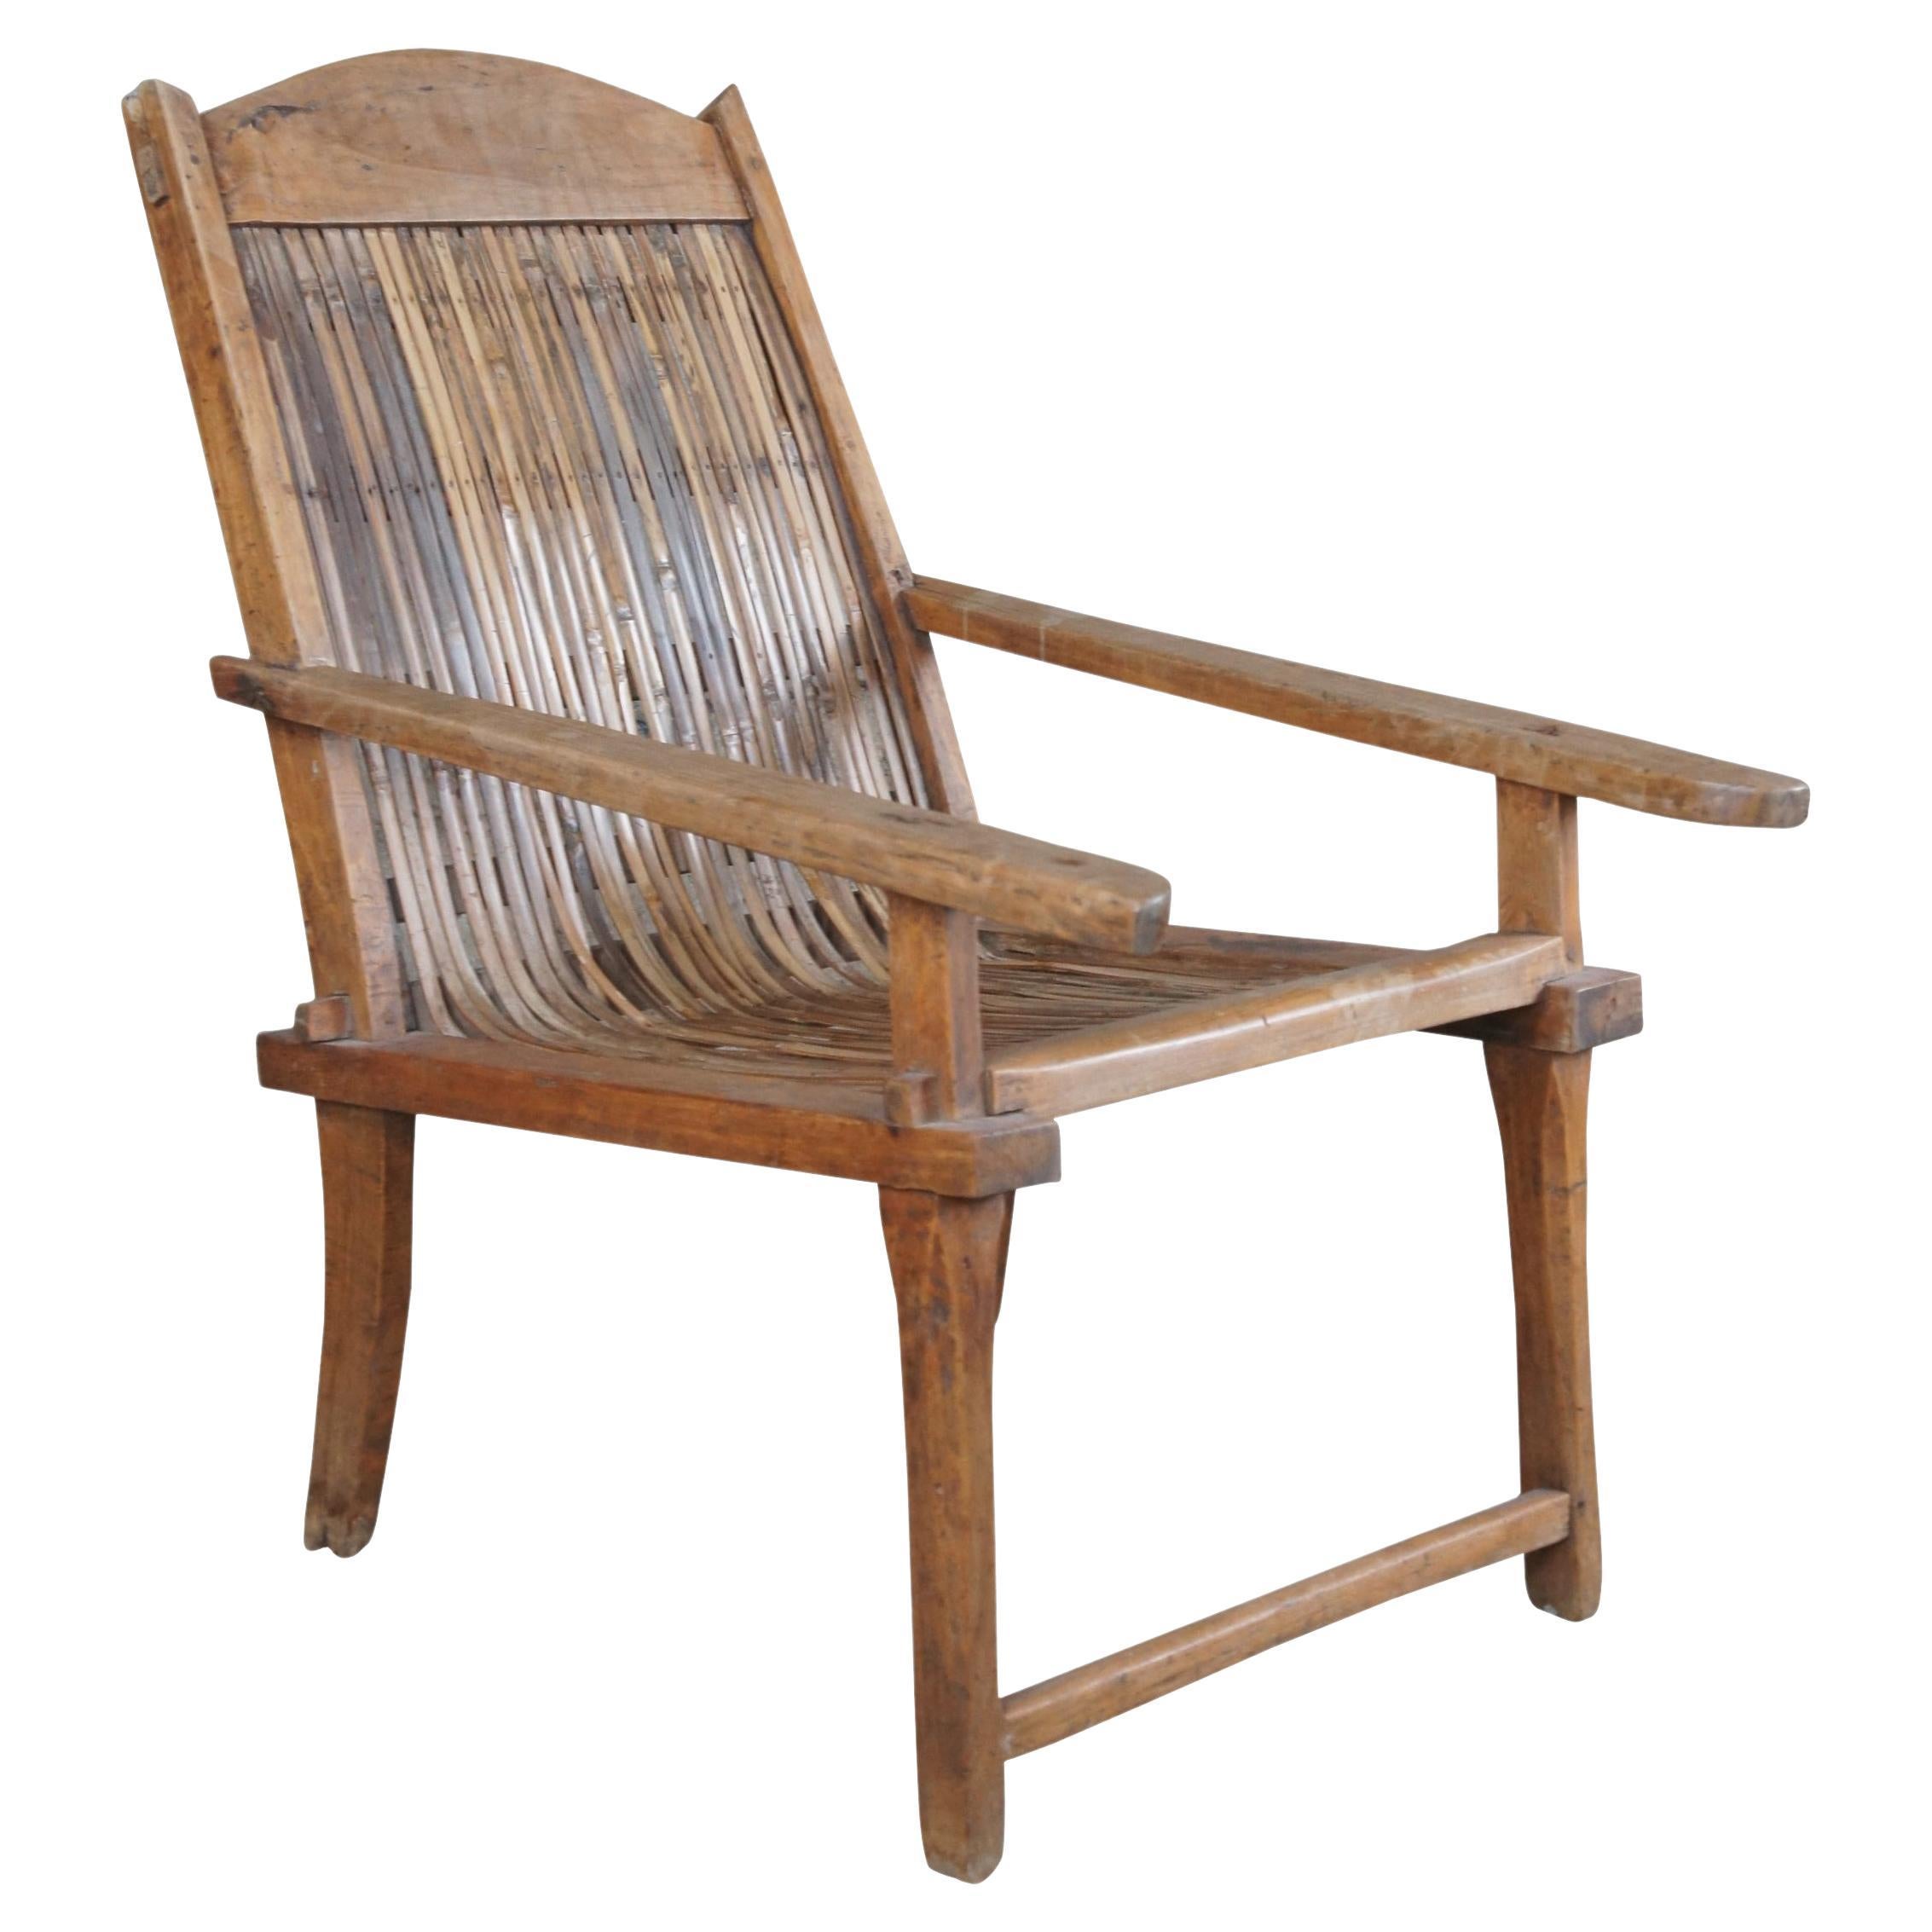 Ancienne chaise de jardinière britannique coloniale anglo-indienne en teck et rotin fendu